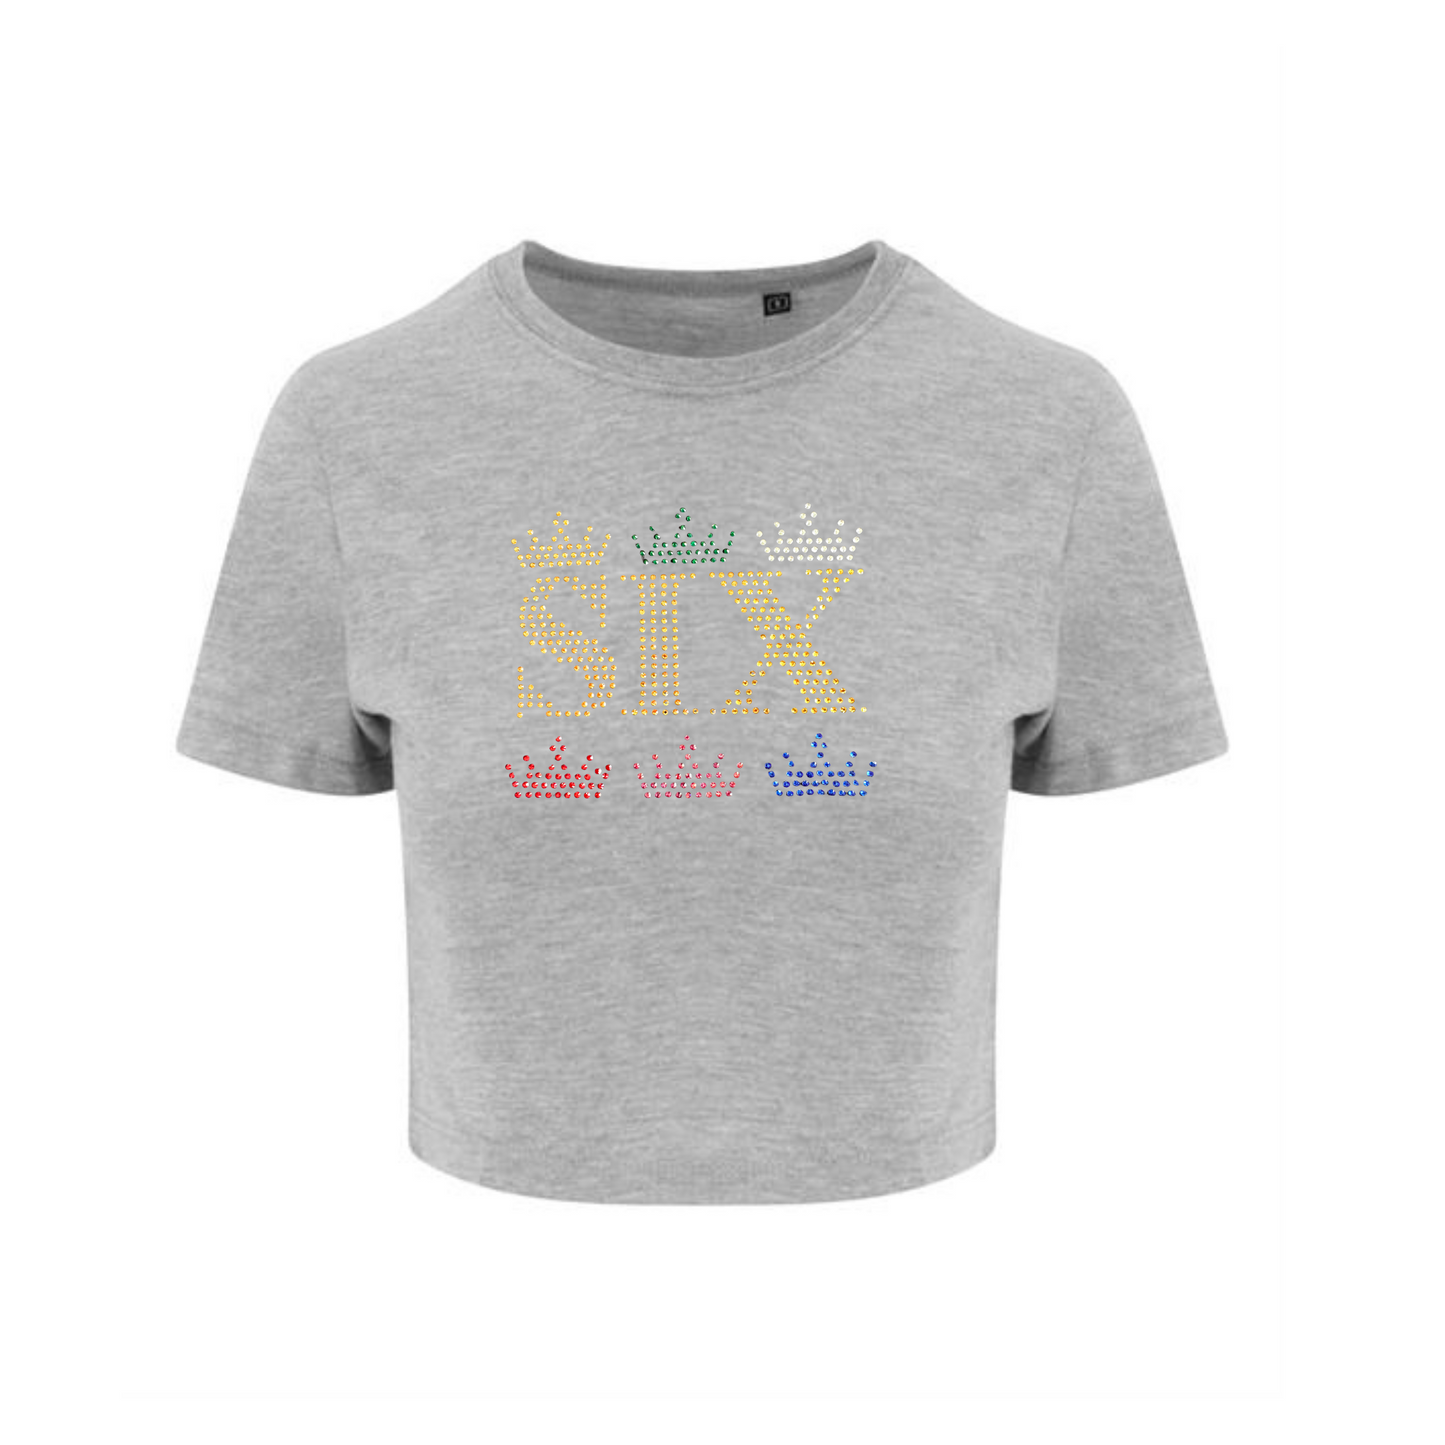 Six the musical bling crown design merch crop t shirt